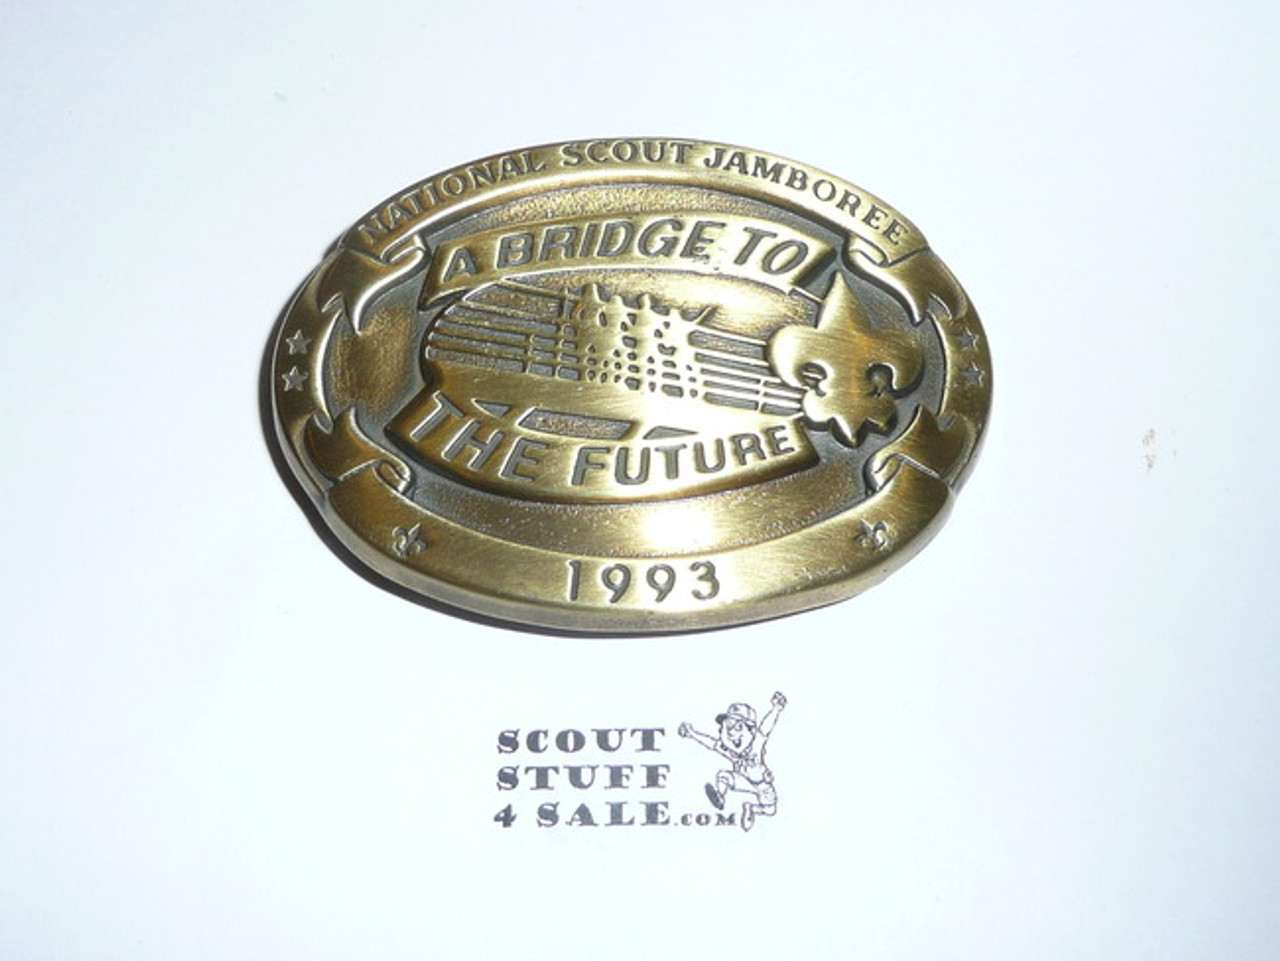 1993 National Jamboree Belt Buckle, bronze color